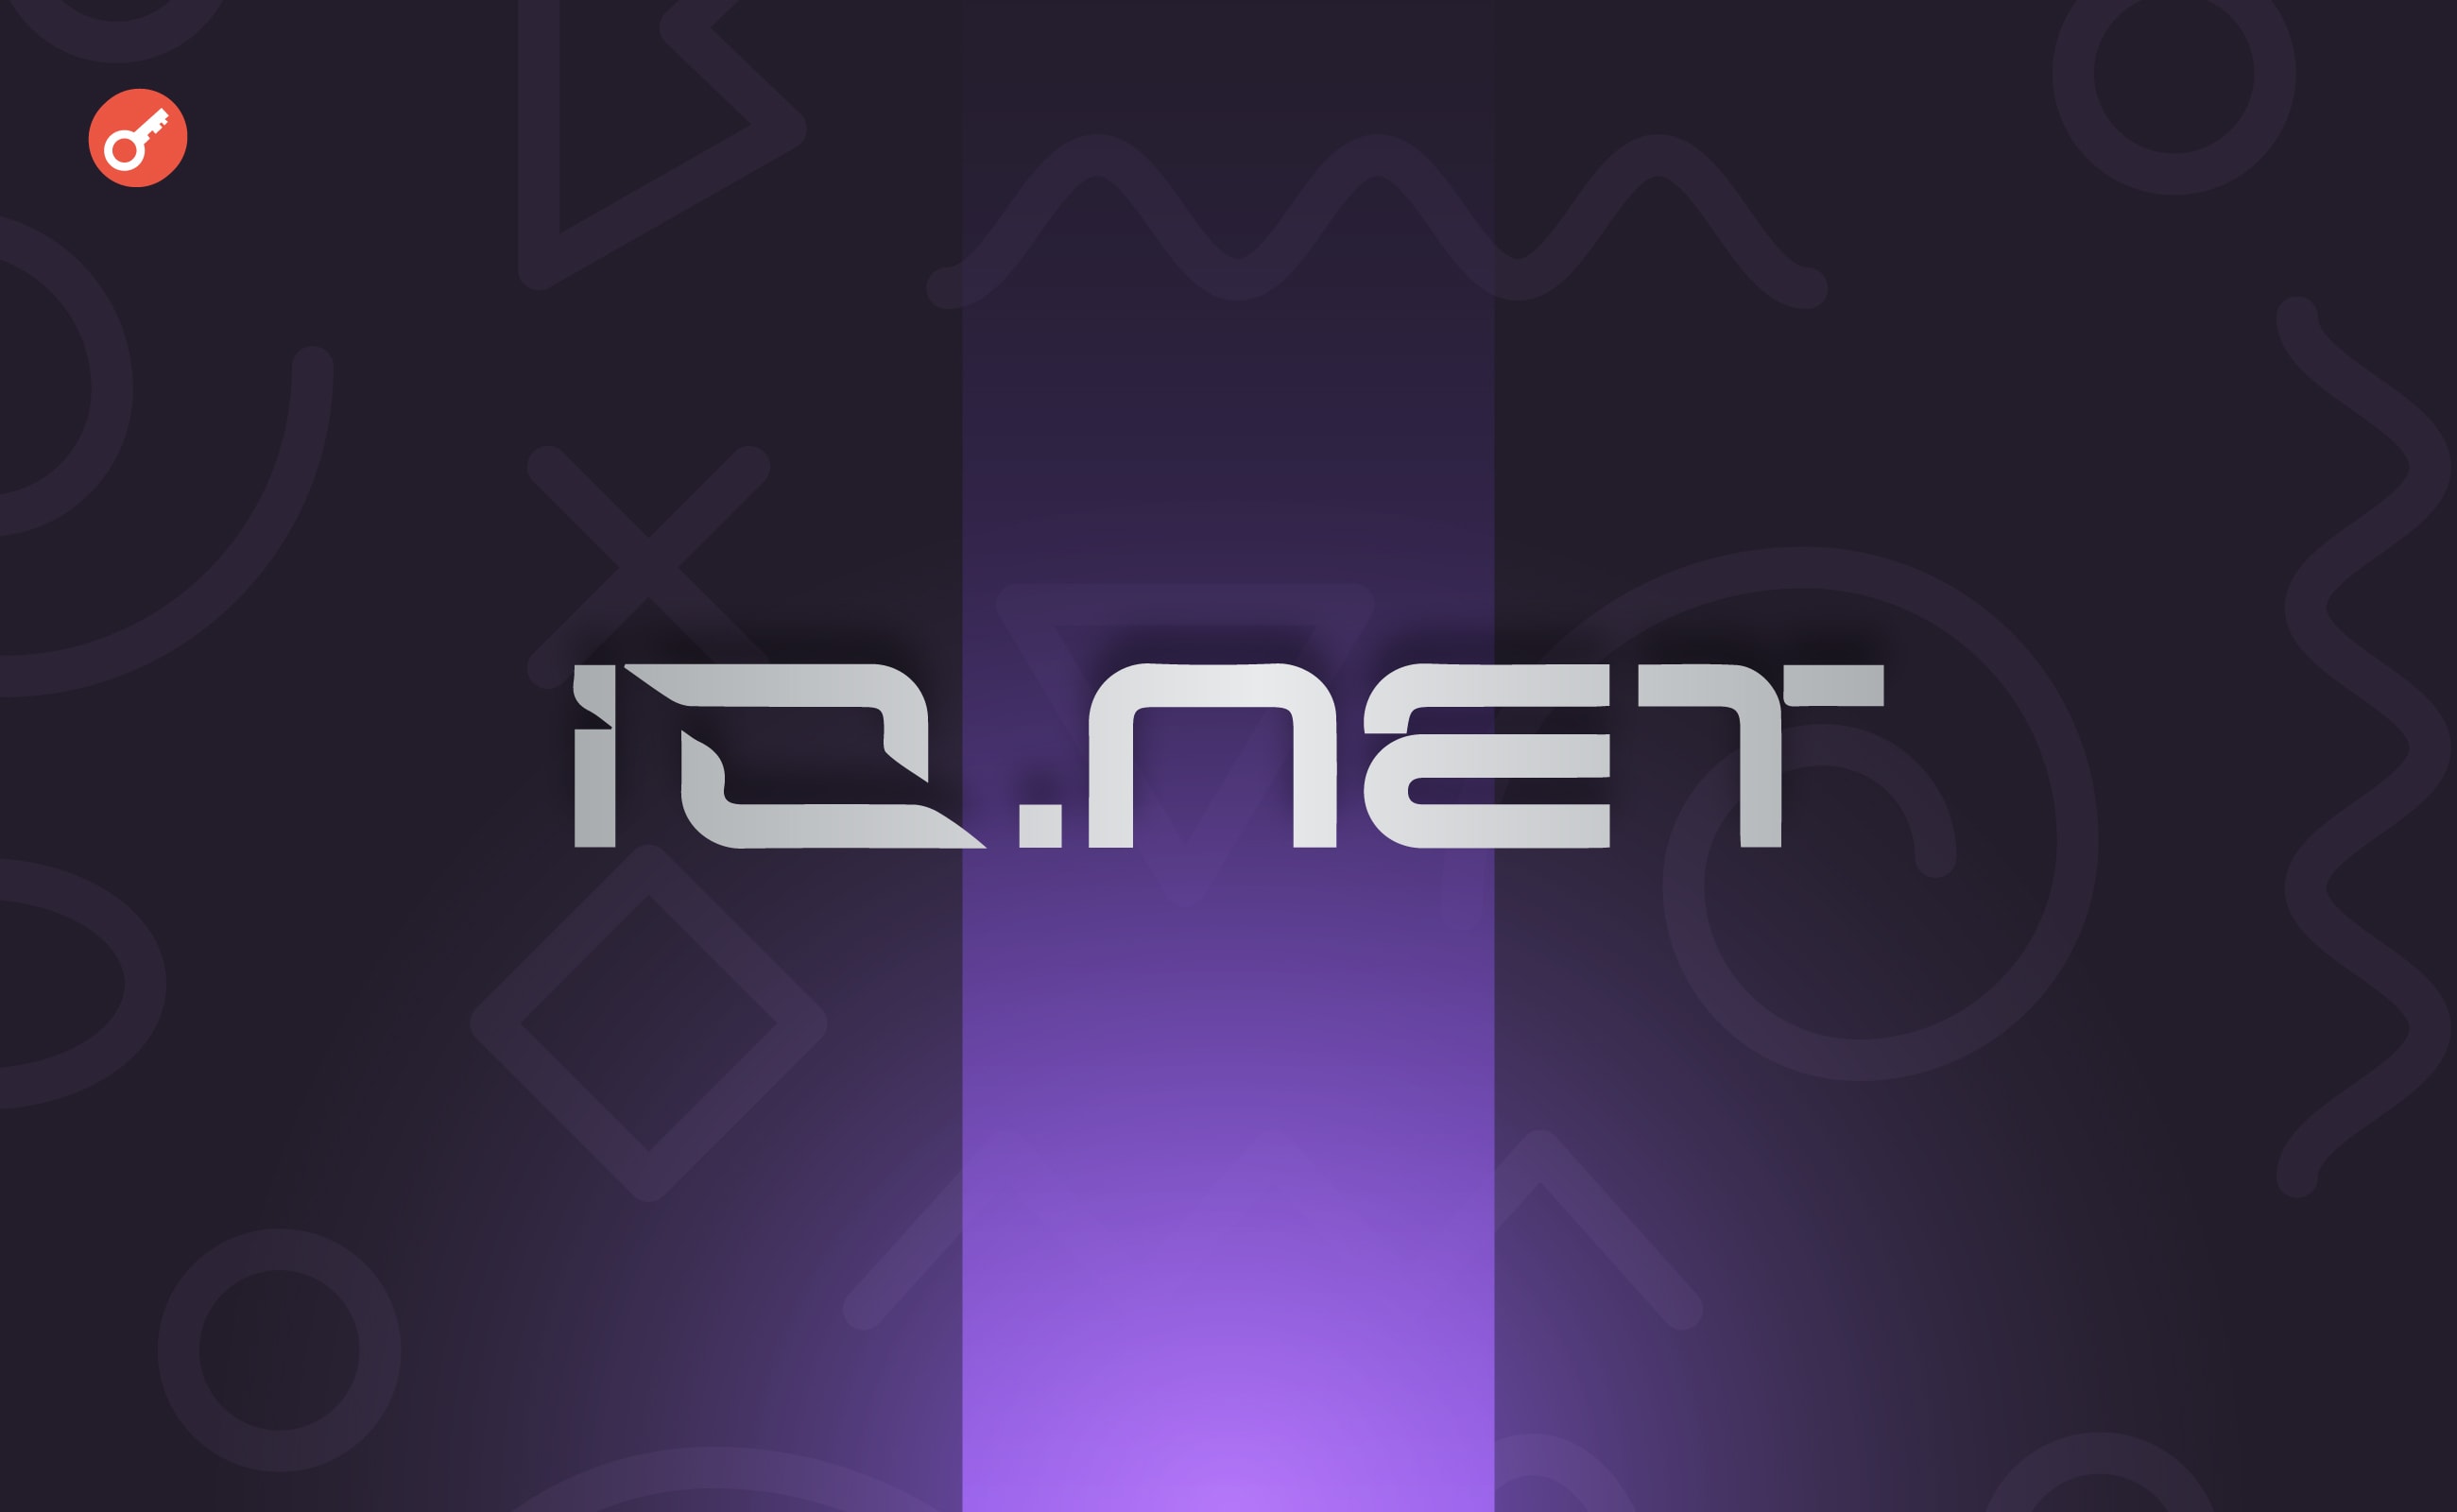 Io.Net — принимаем участие в кампании на Galxe. Заглавный коллаж статьи.